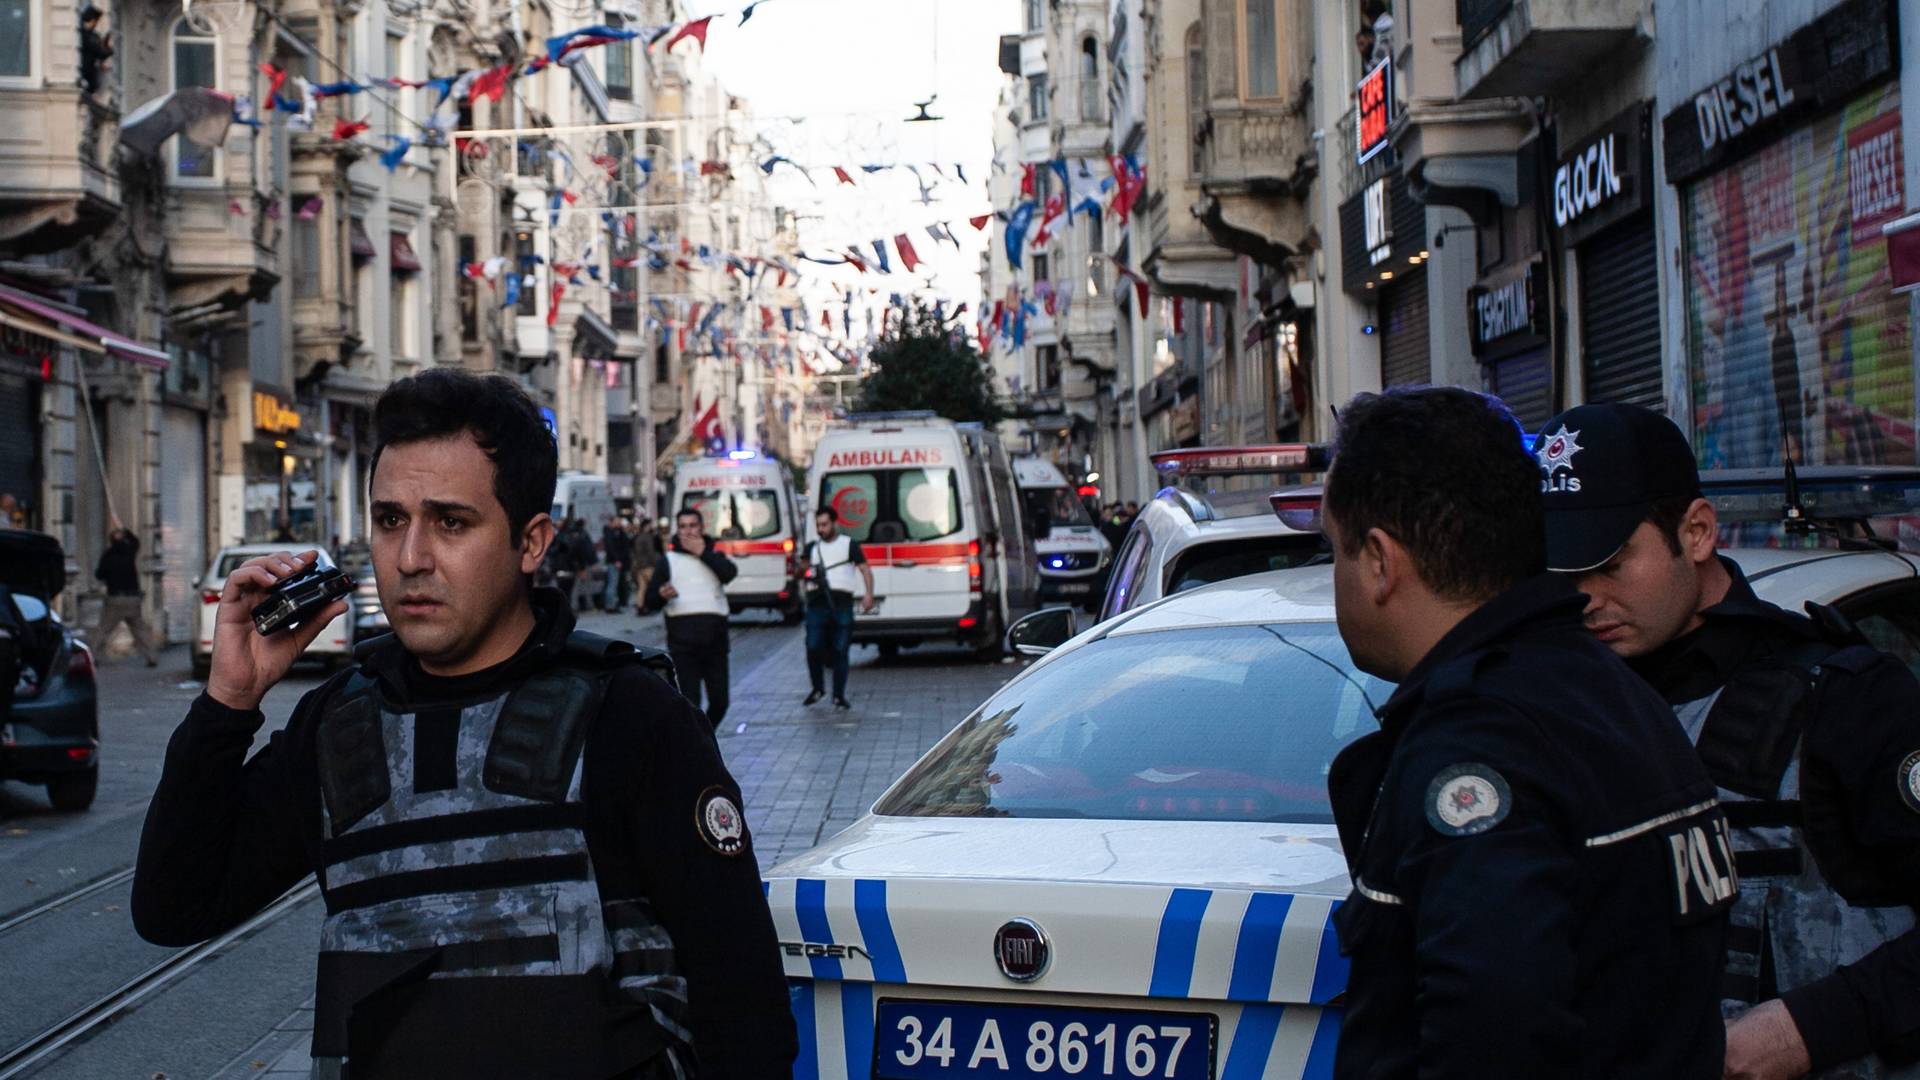 Wybuch w Stambule. Rośnie liczba ofiar. Władze zabroniły relacjonowania tragedii w mediach